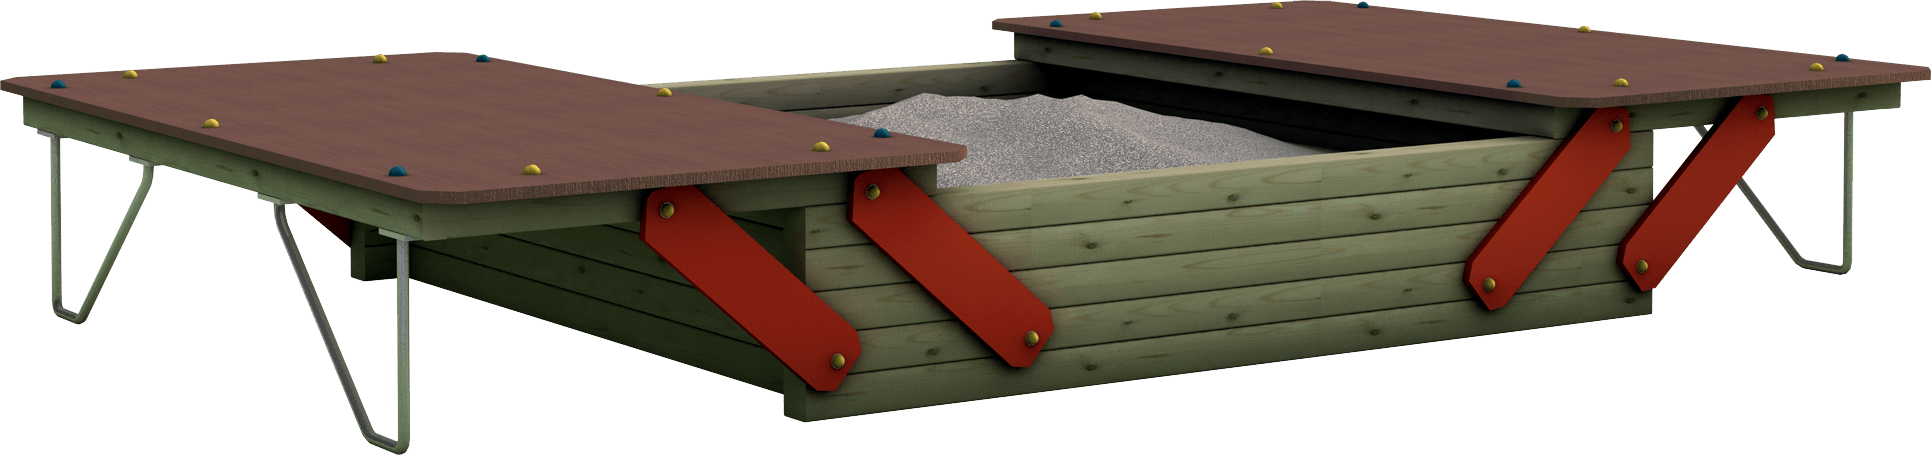 Sabbiaia gioco con coperchi per esterno in legno di pino nordico impregnato in autoclave realizzata da Linea Montanalegno - ILT